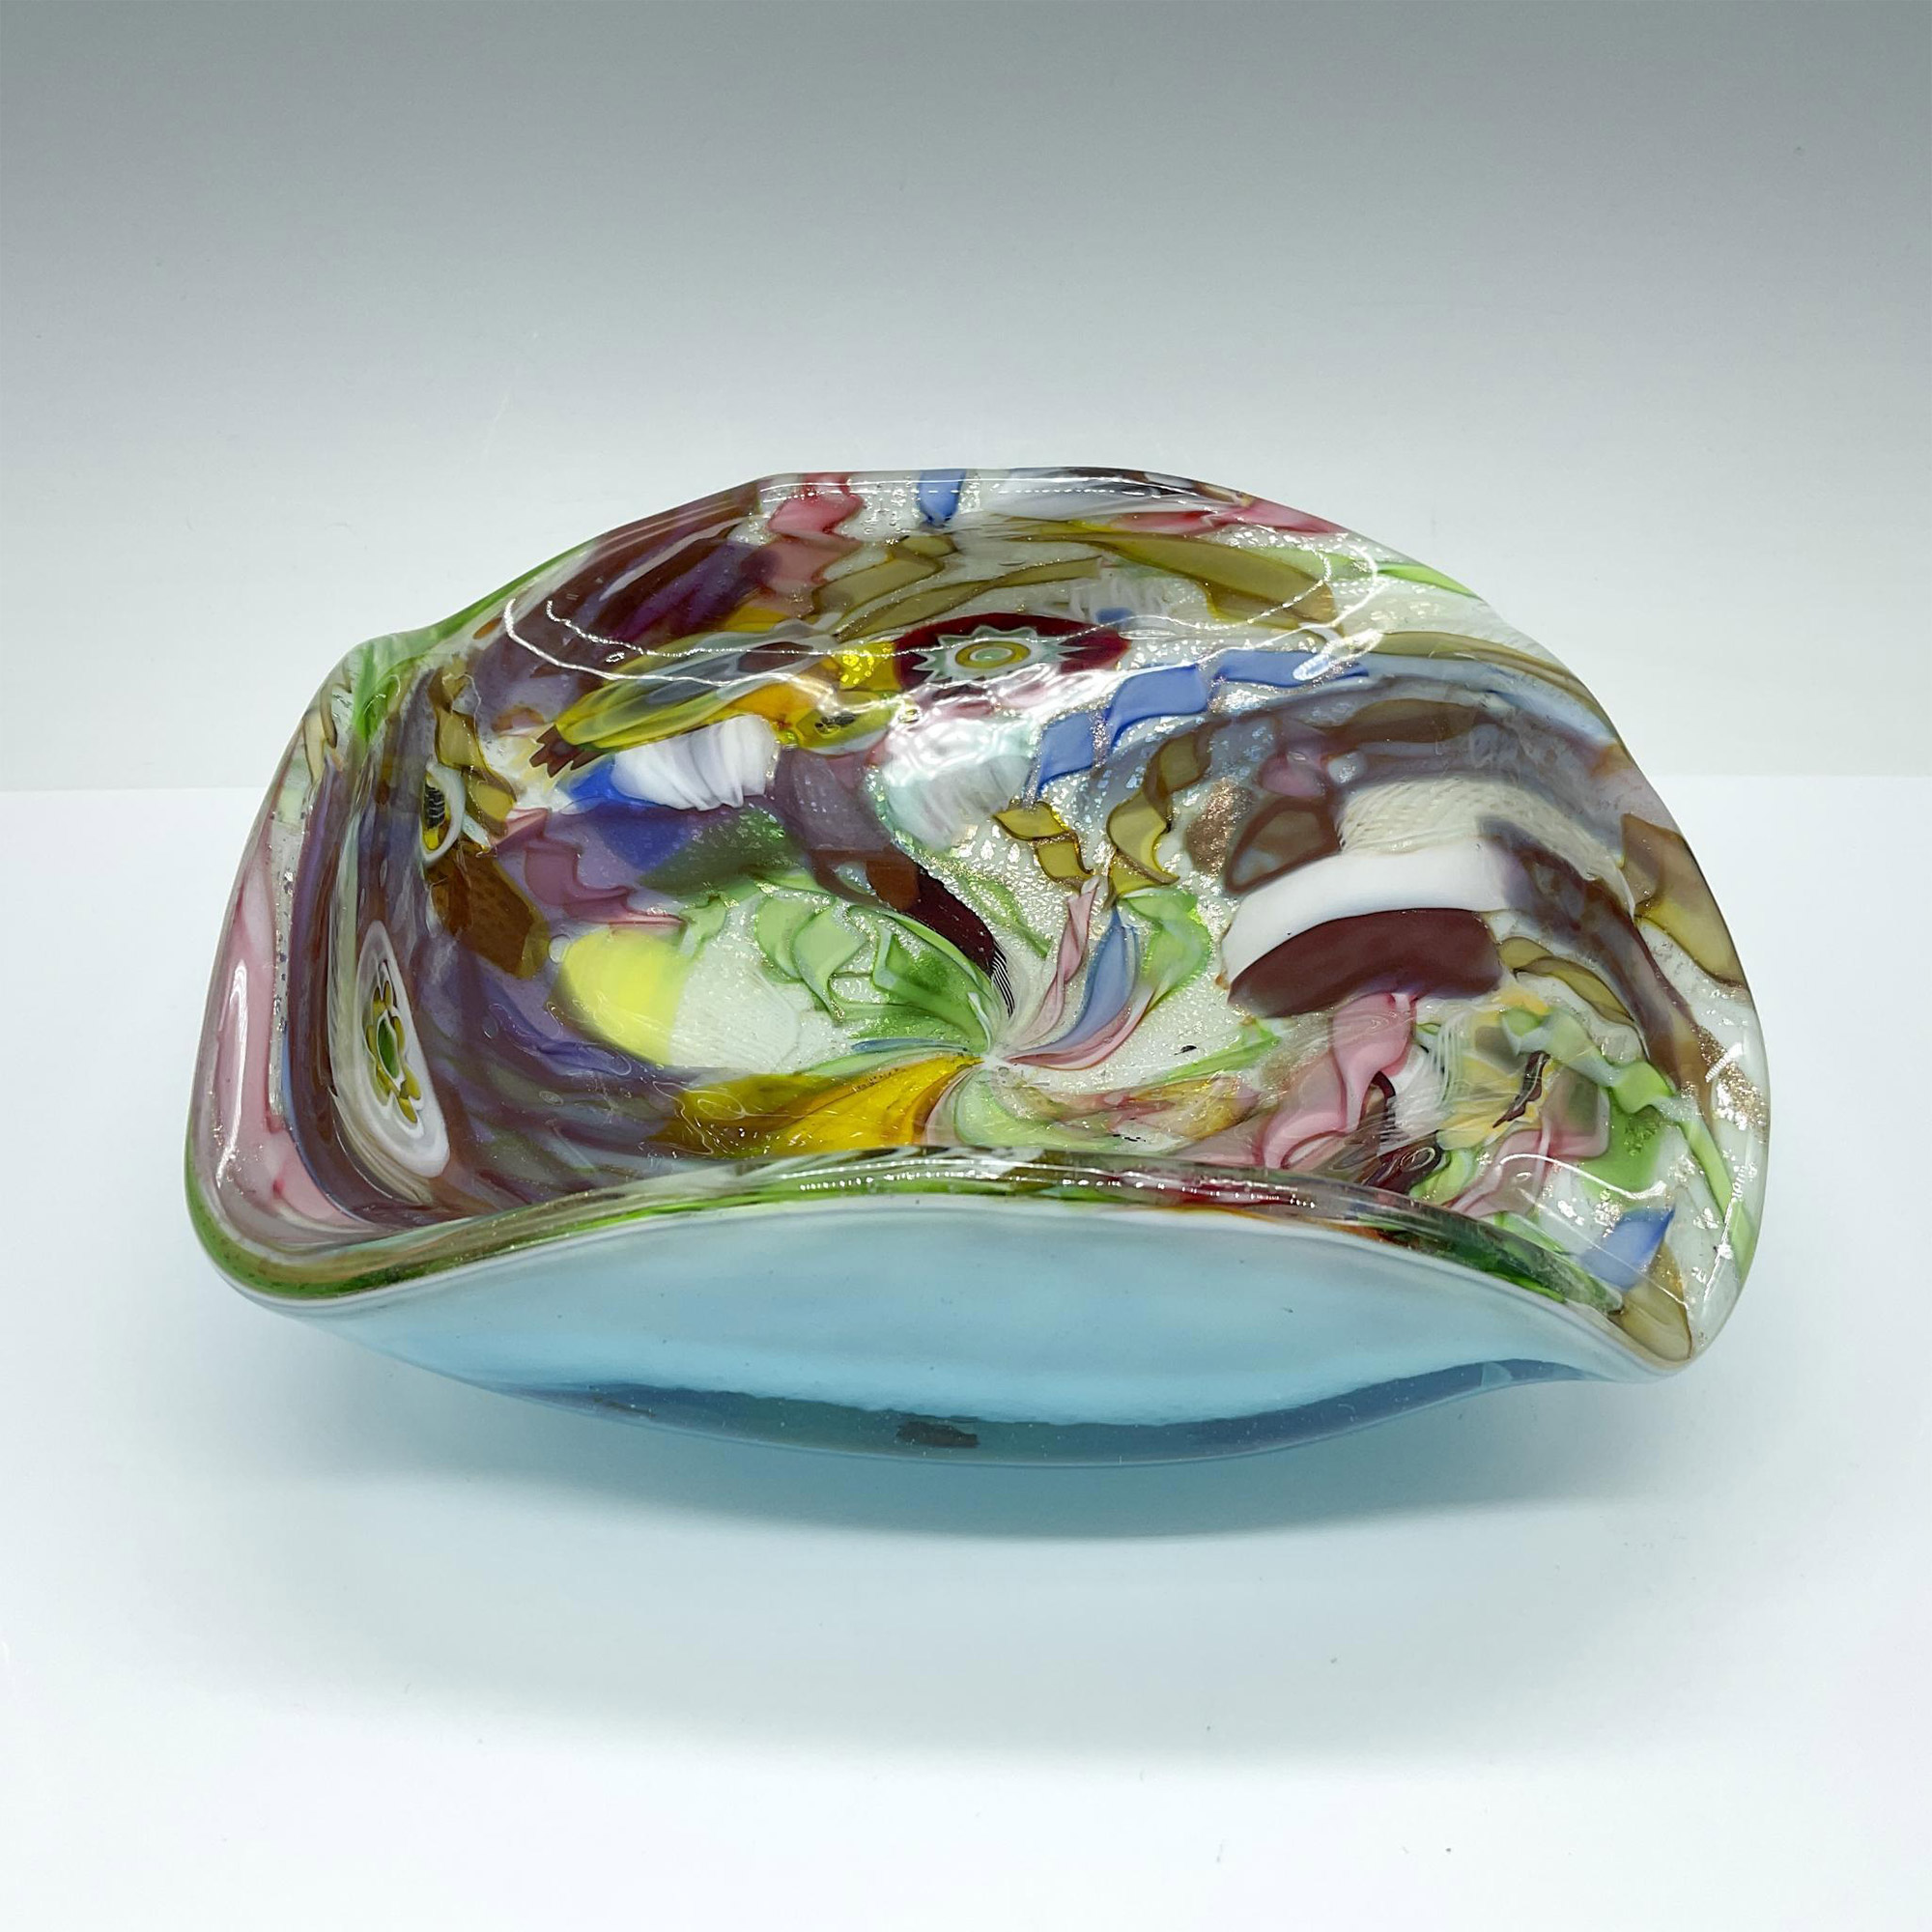 Avem Bizantino Art Glass Bowl - Image 2 of 4